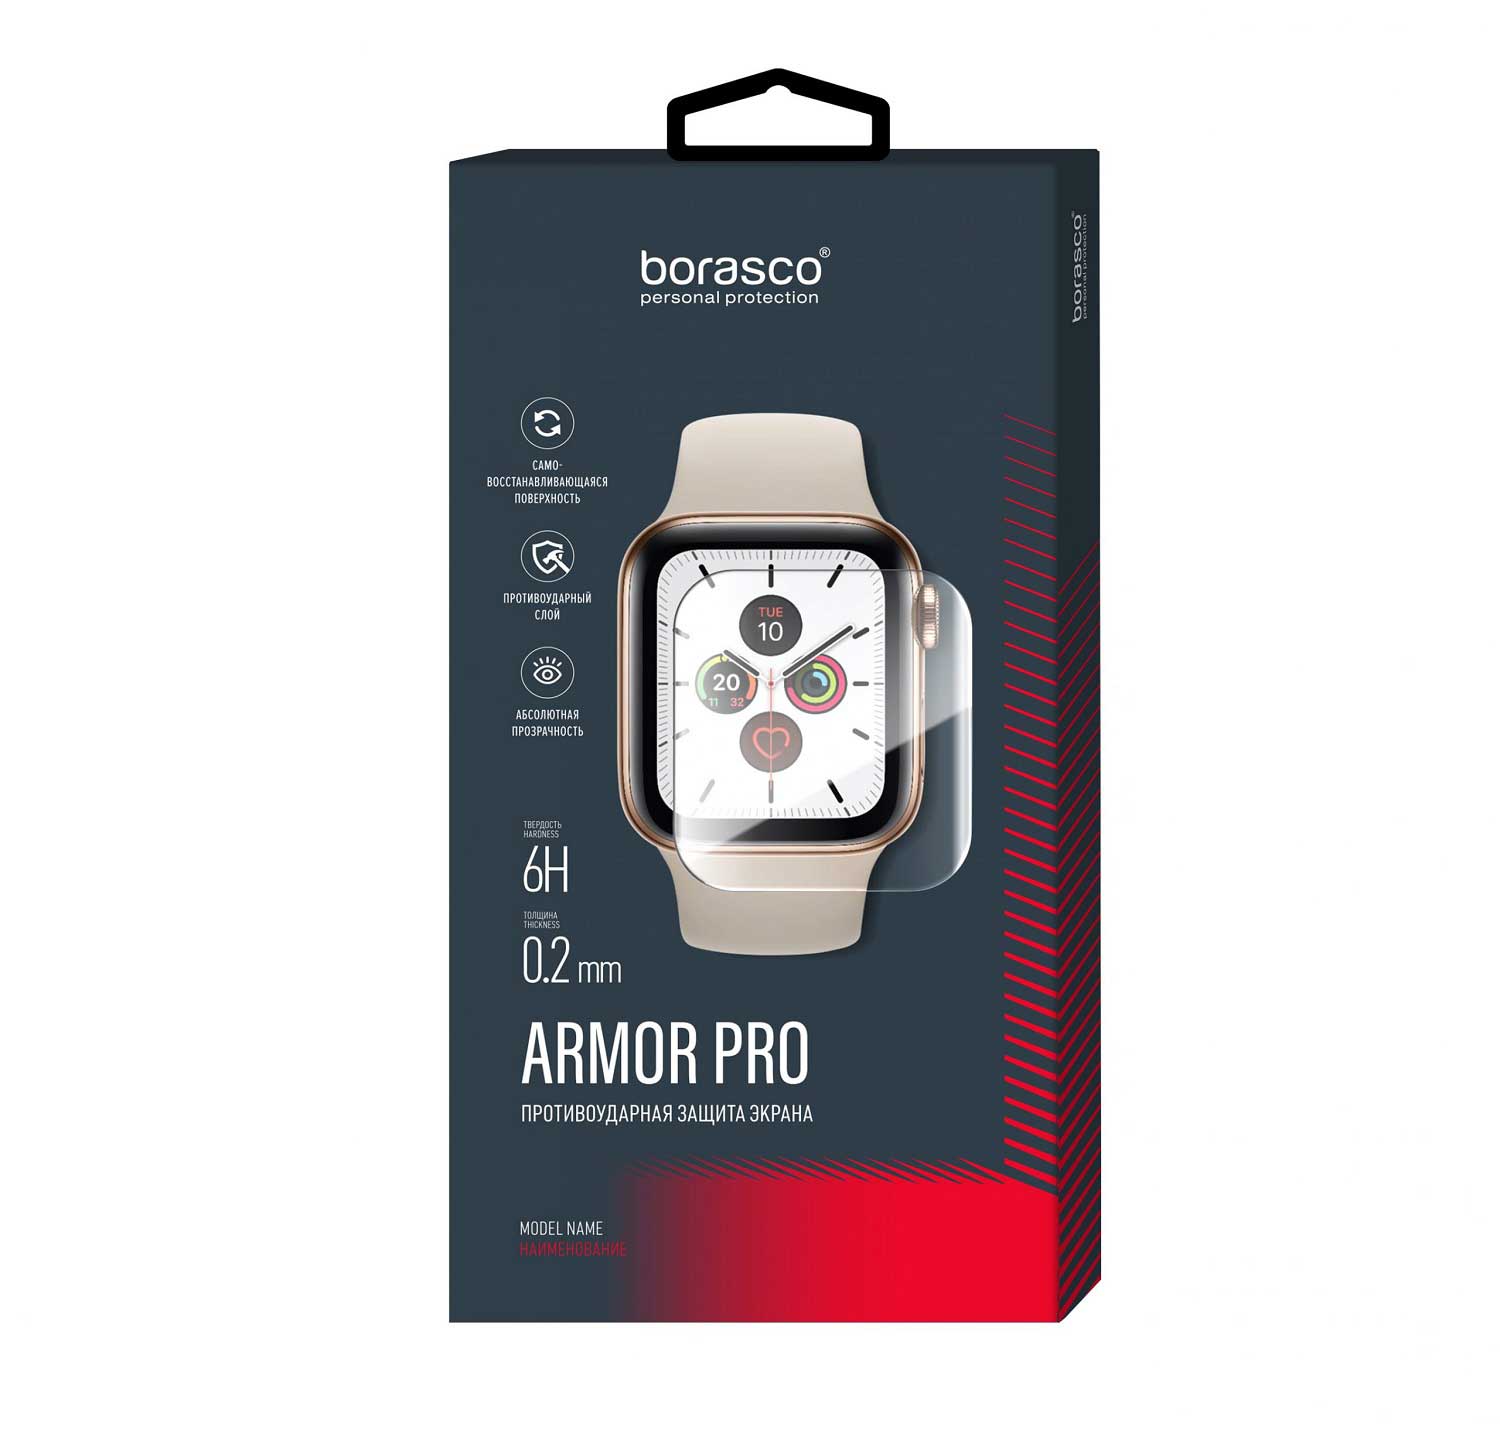 Защита экрана BoraSCO Armor Pro для Xiaomi Mi Band 2 матовый защита экрана borasco armor pro для honor band 4 5 матовый